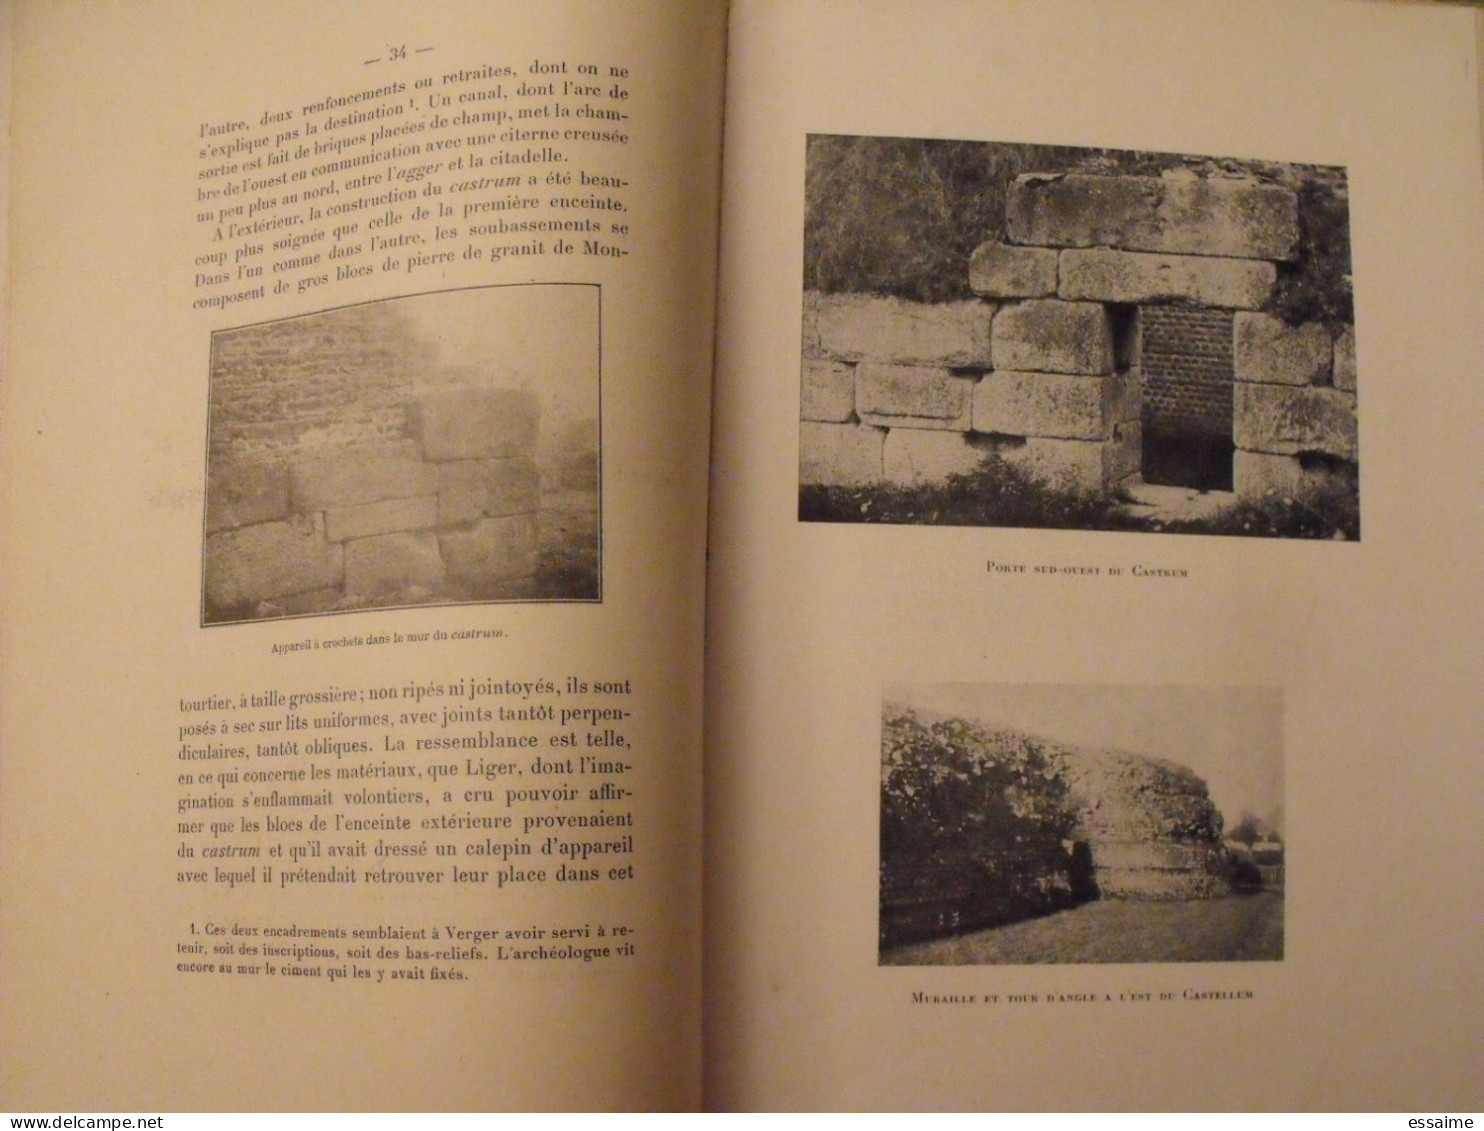 Les ruines gallo-romaines de Jublains. Mayenne. Laurain. Goupil, Laval, 1958